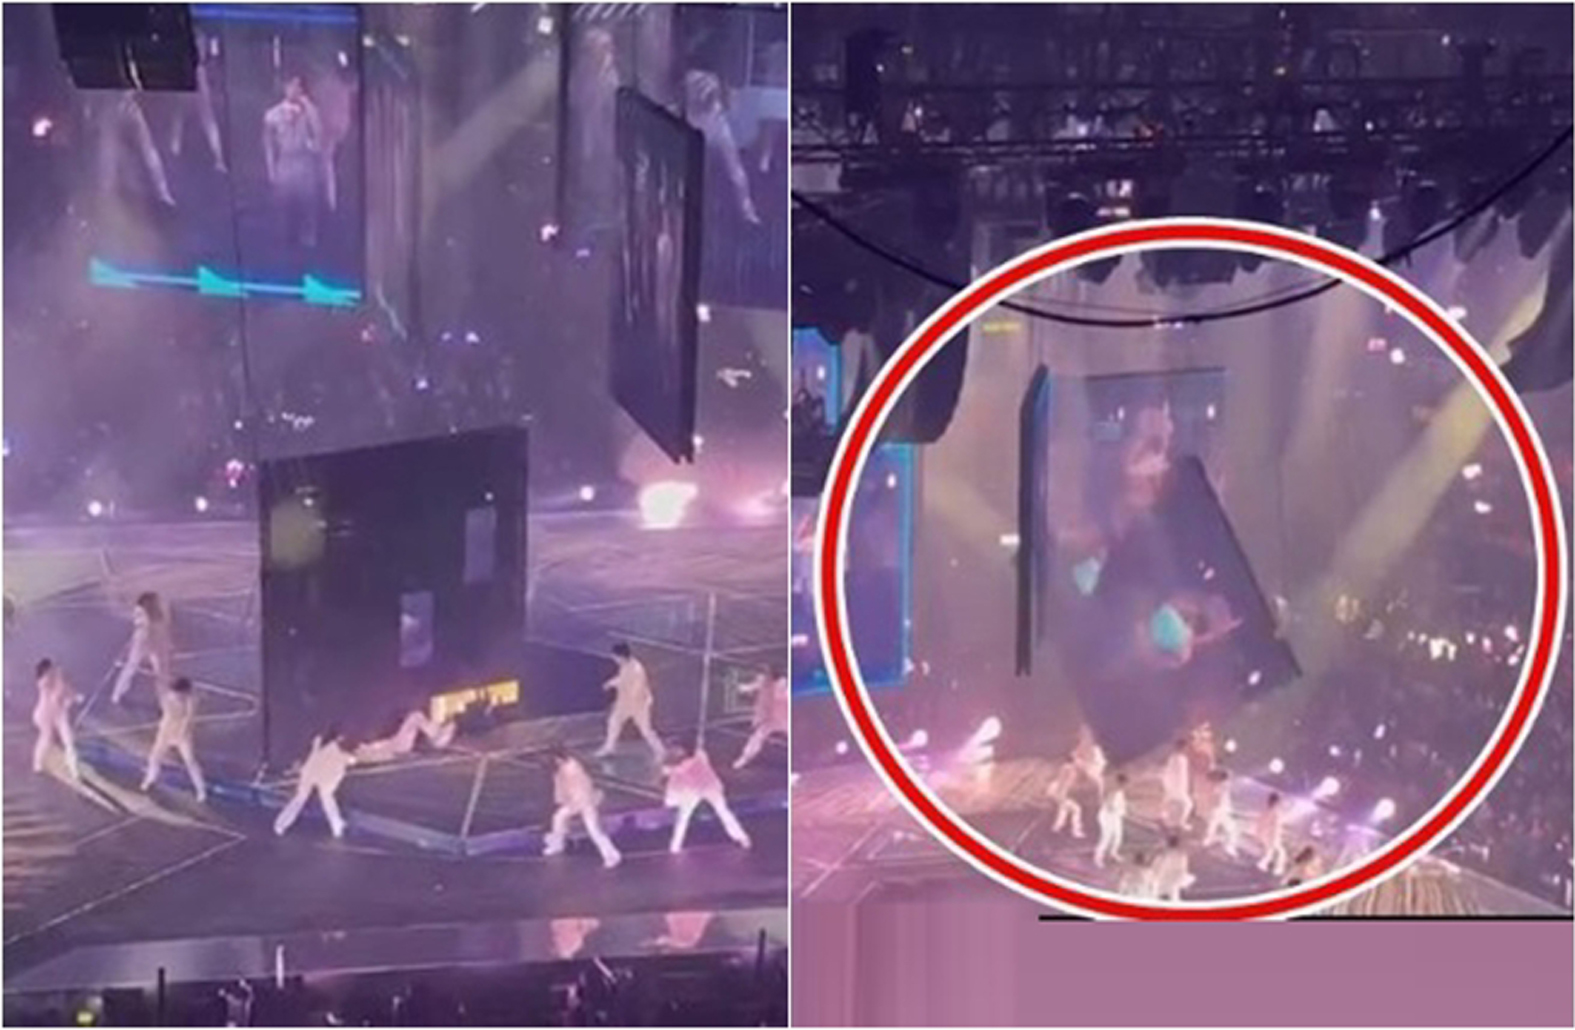 2舞蹈员被600公斤巨型屏幕砸伤画面太触目惊心。